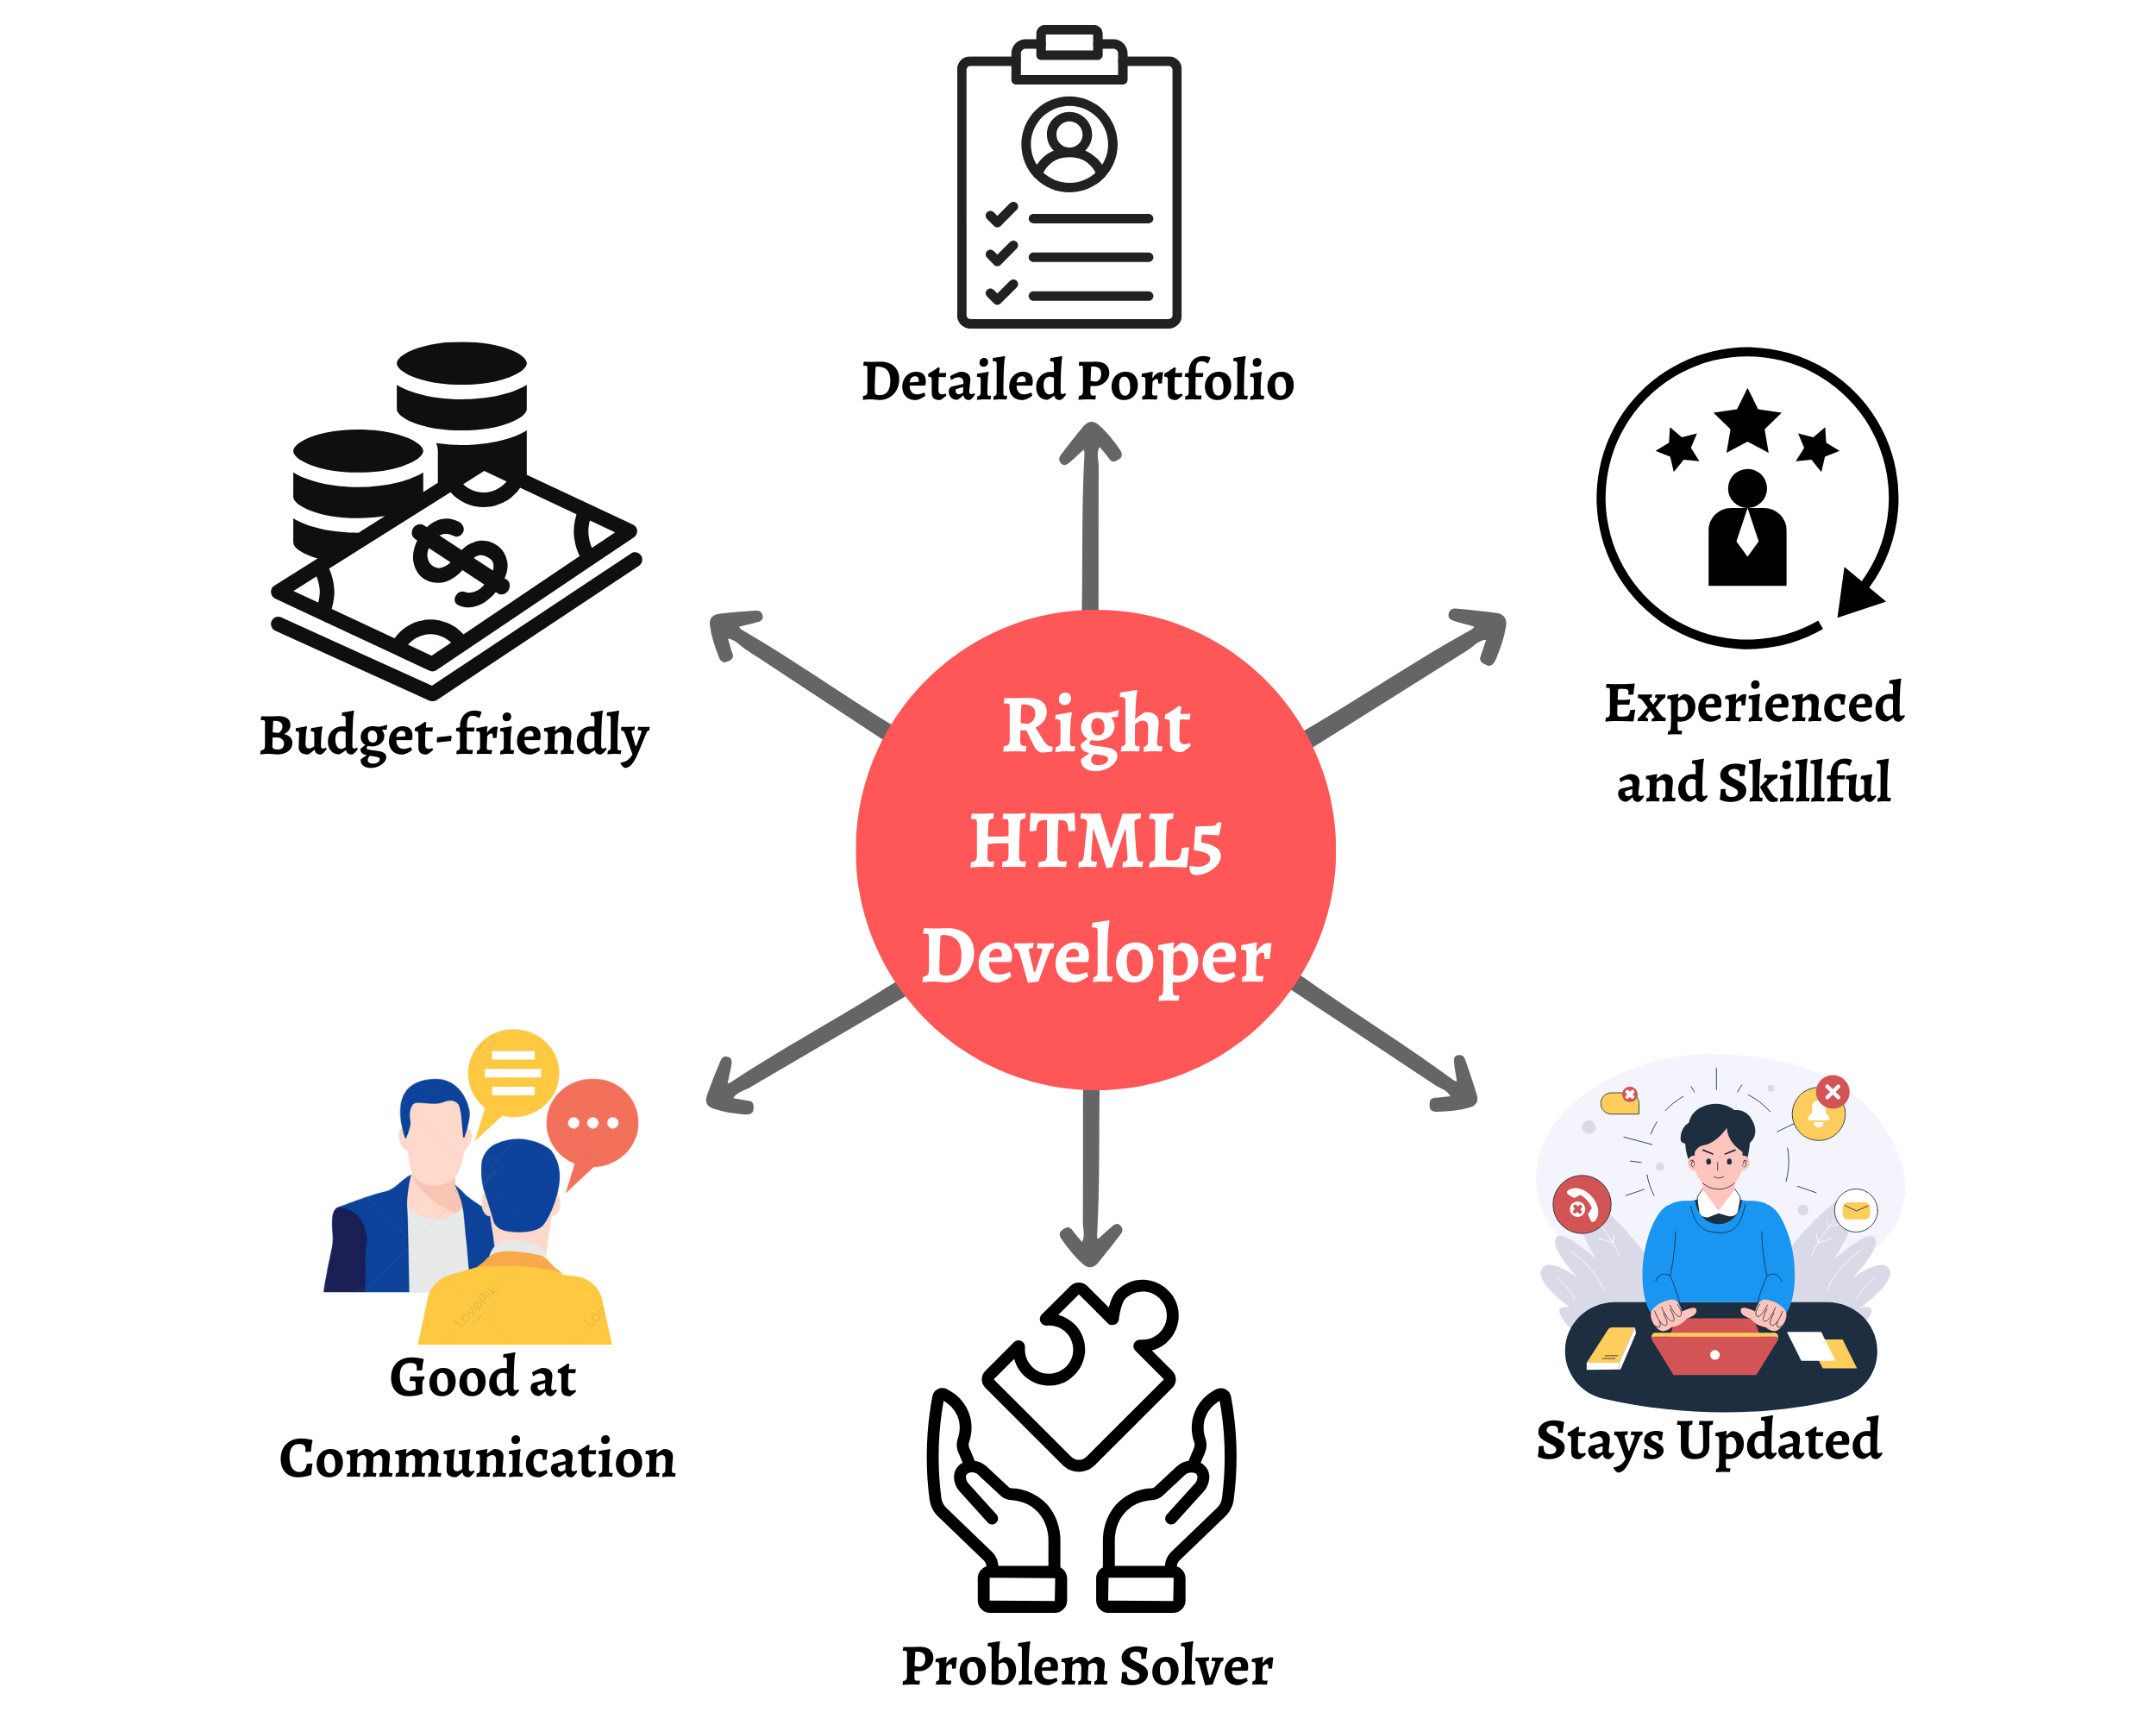 Right HTML5 Developer